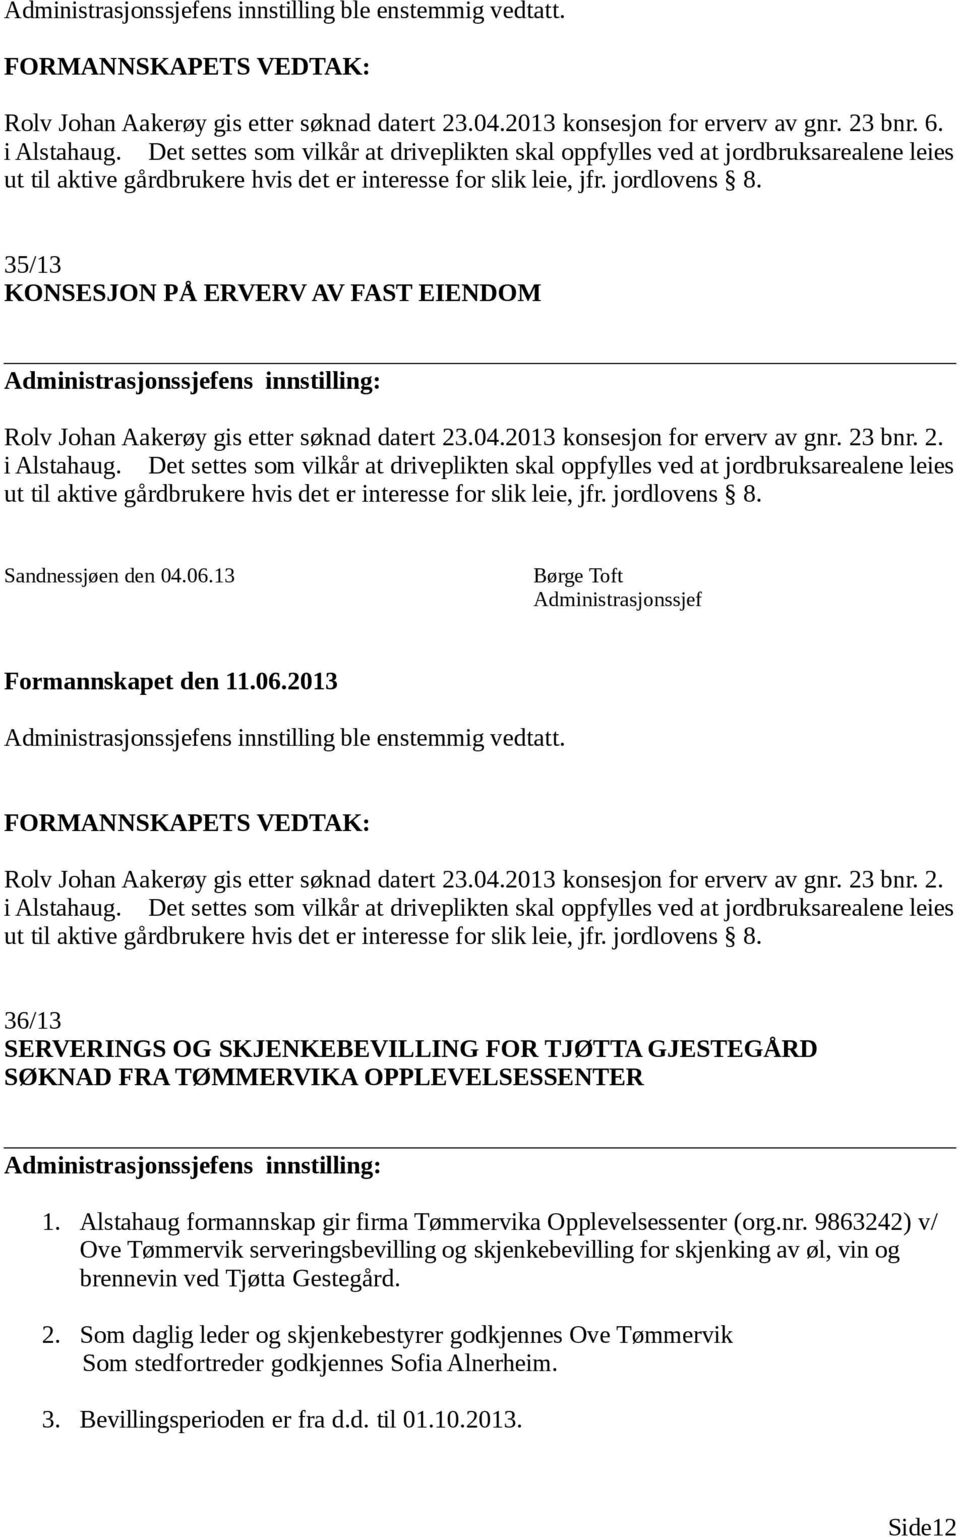 35/13 KONSESJON PÅ ERVERV AV FAST EIENDOM ens innstilling: Rolv Johan Aakerøy gis etter søknad datert 23.04.2013 konsesjon for erverv av gnr. 23 bnr. 2. i Alstahaug.